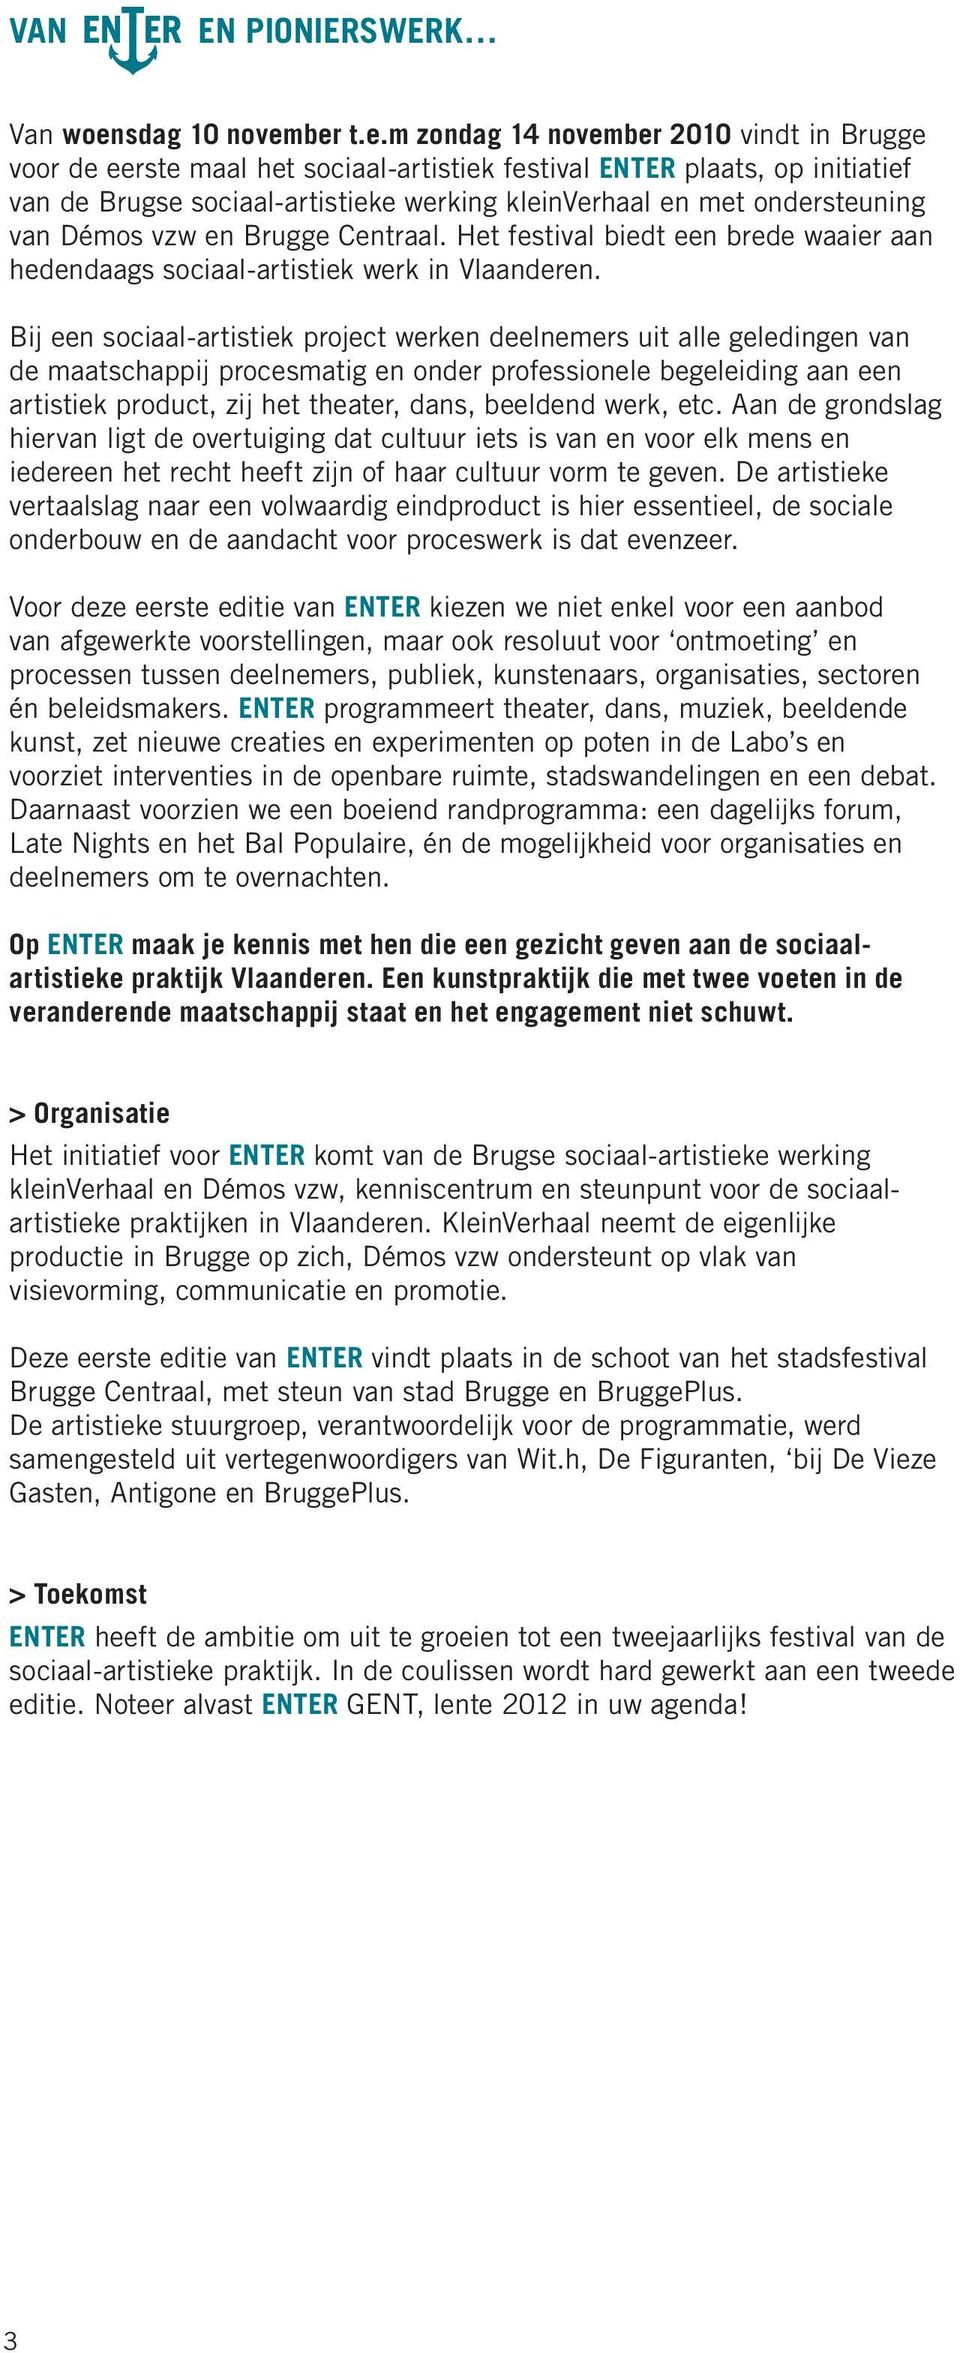 ber t.e.m zondag 14 november 2010 vindt in Brugge voor de eerste maal het sociaal-artistiek festival ENTER plaats, op initiatief van de Brugse sociaal-artistieke werking kleinverhaal en met